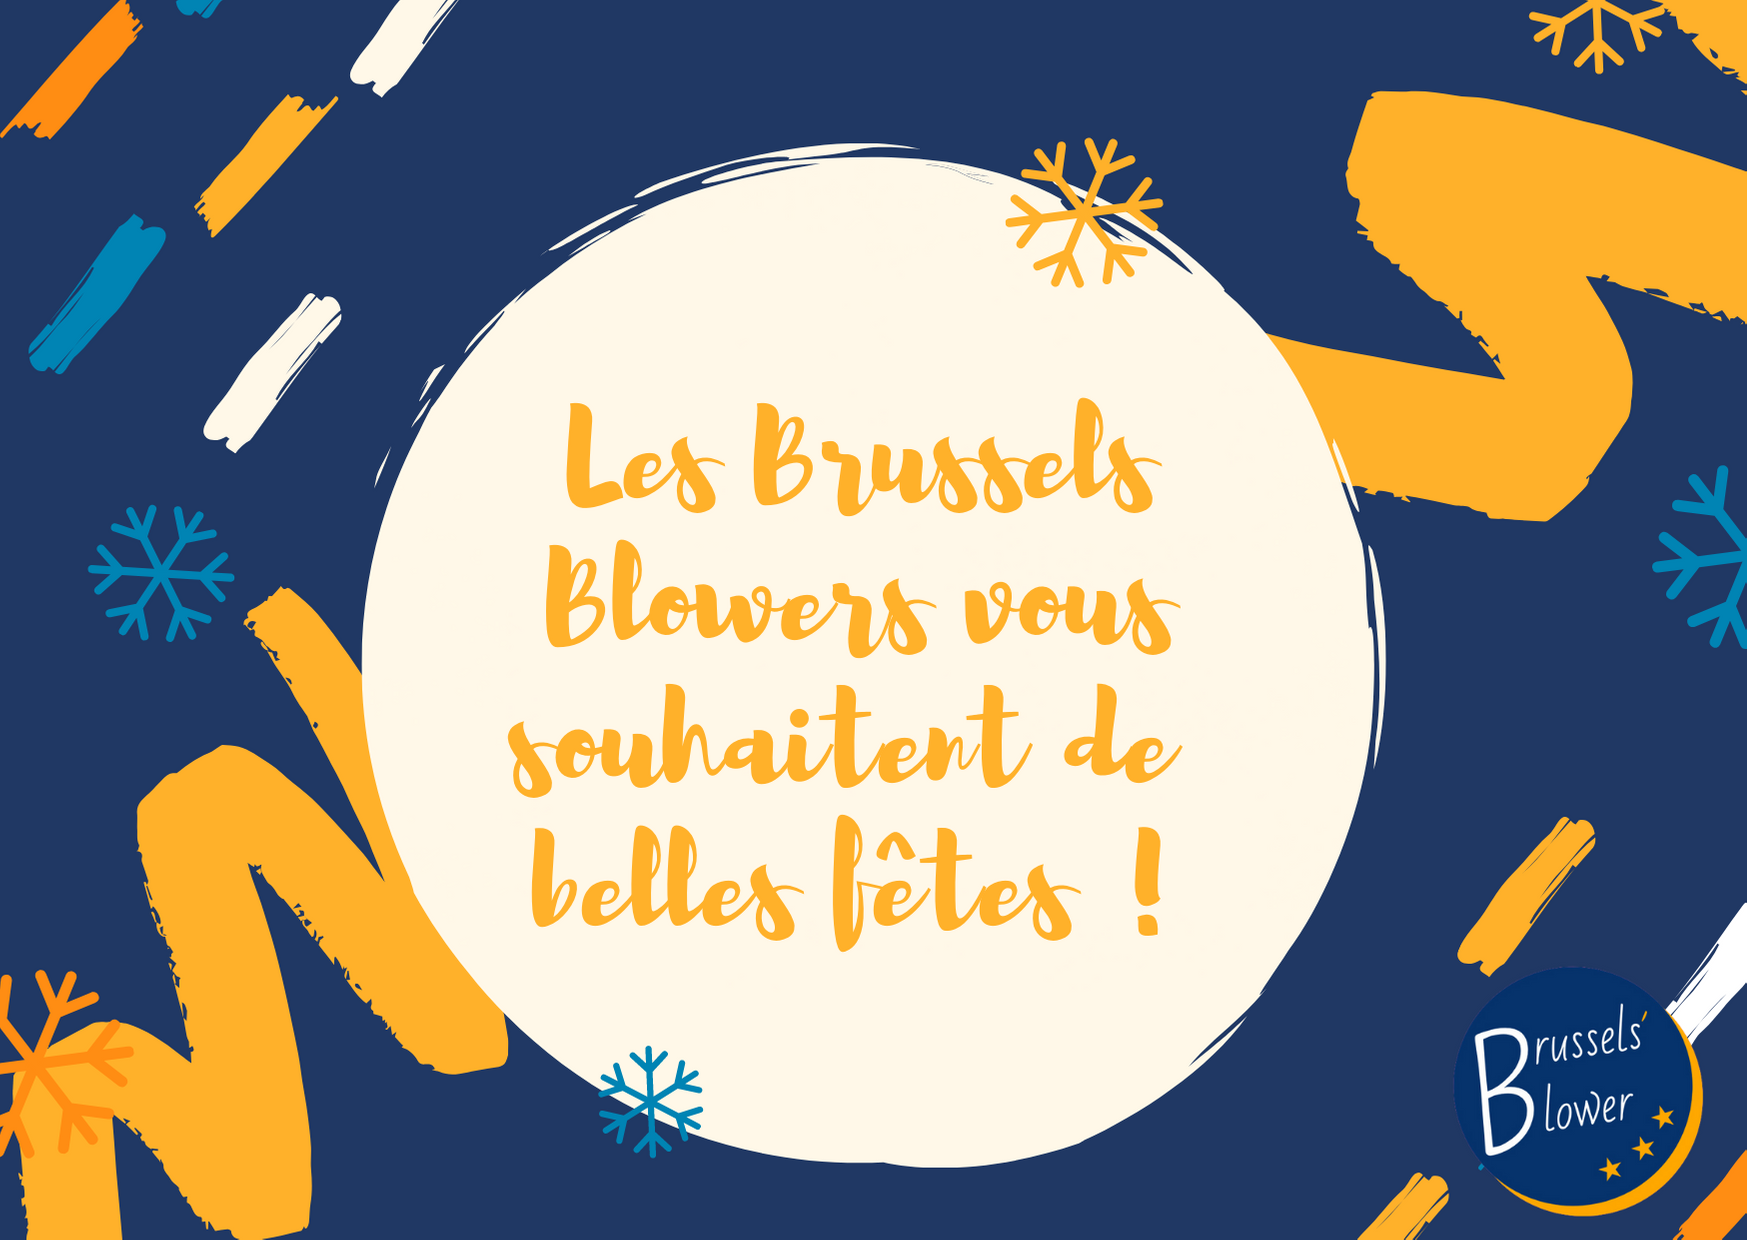 Les Brussels Blowers vous souhaitent de belles fêtes !